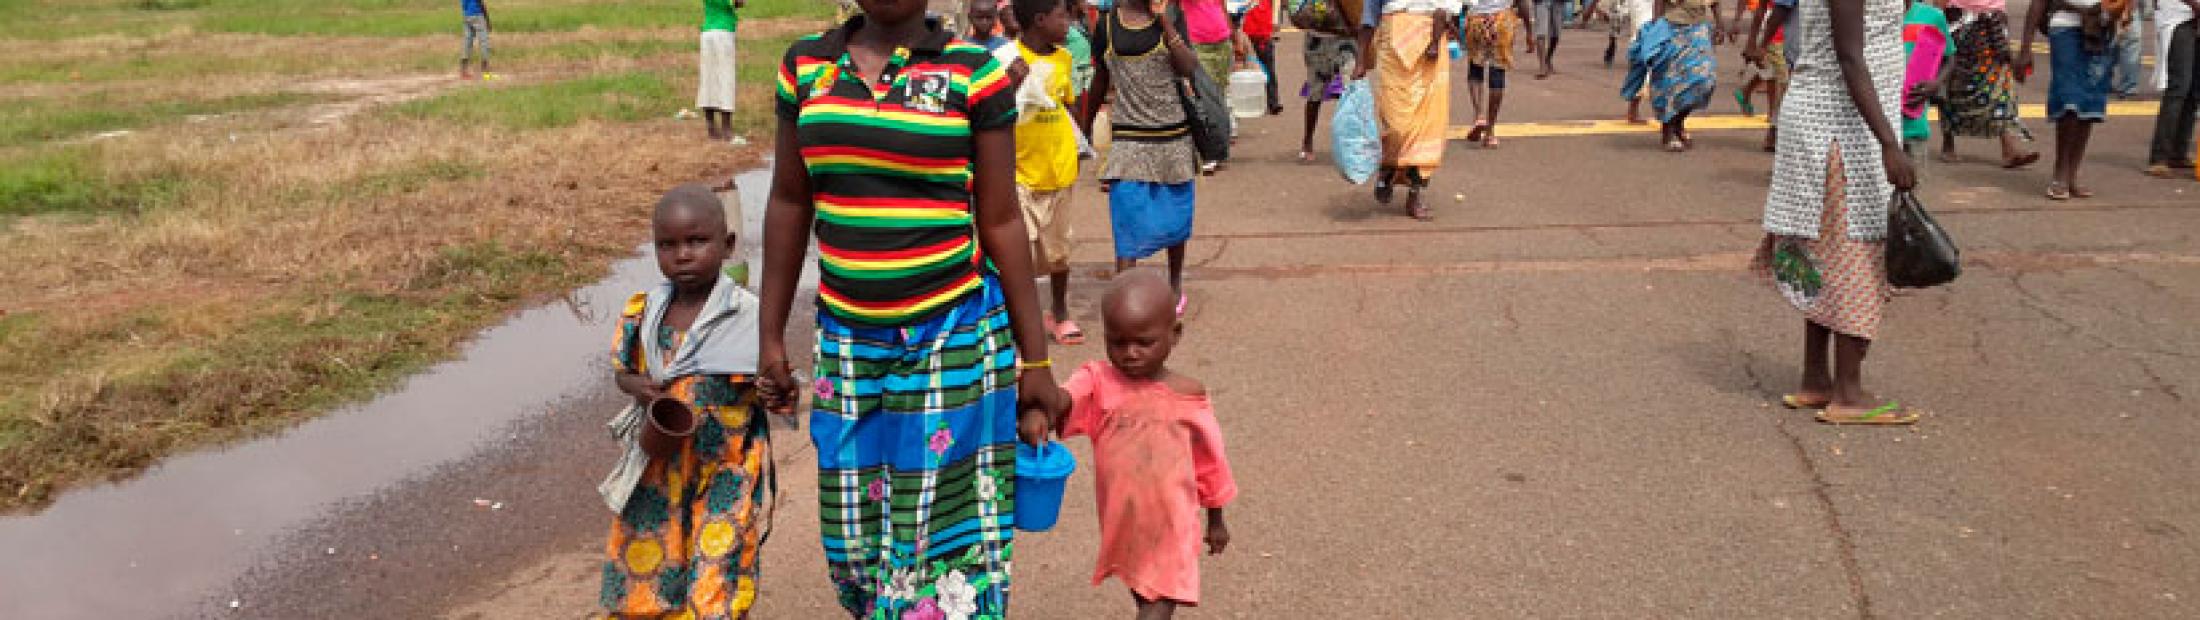 República Centroafricana: una crisis de refugiados que persiste